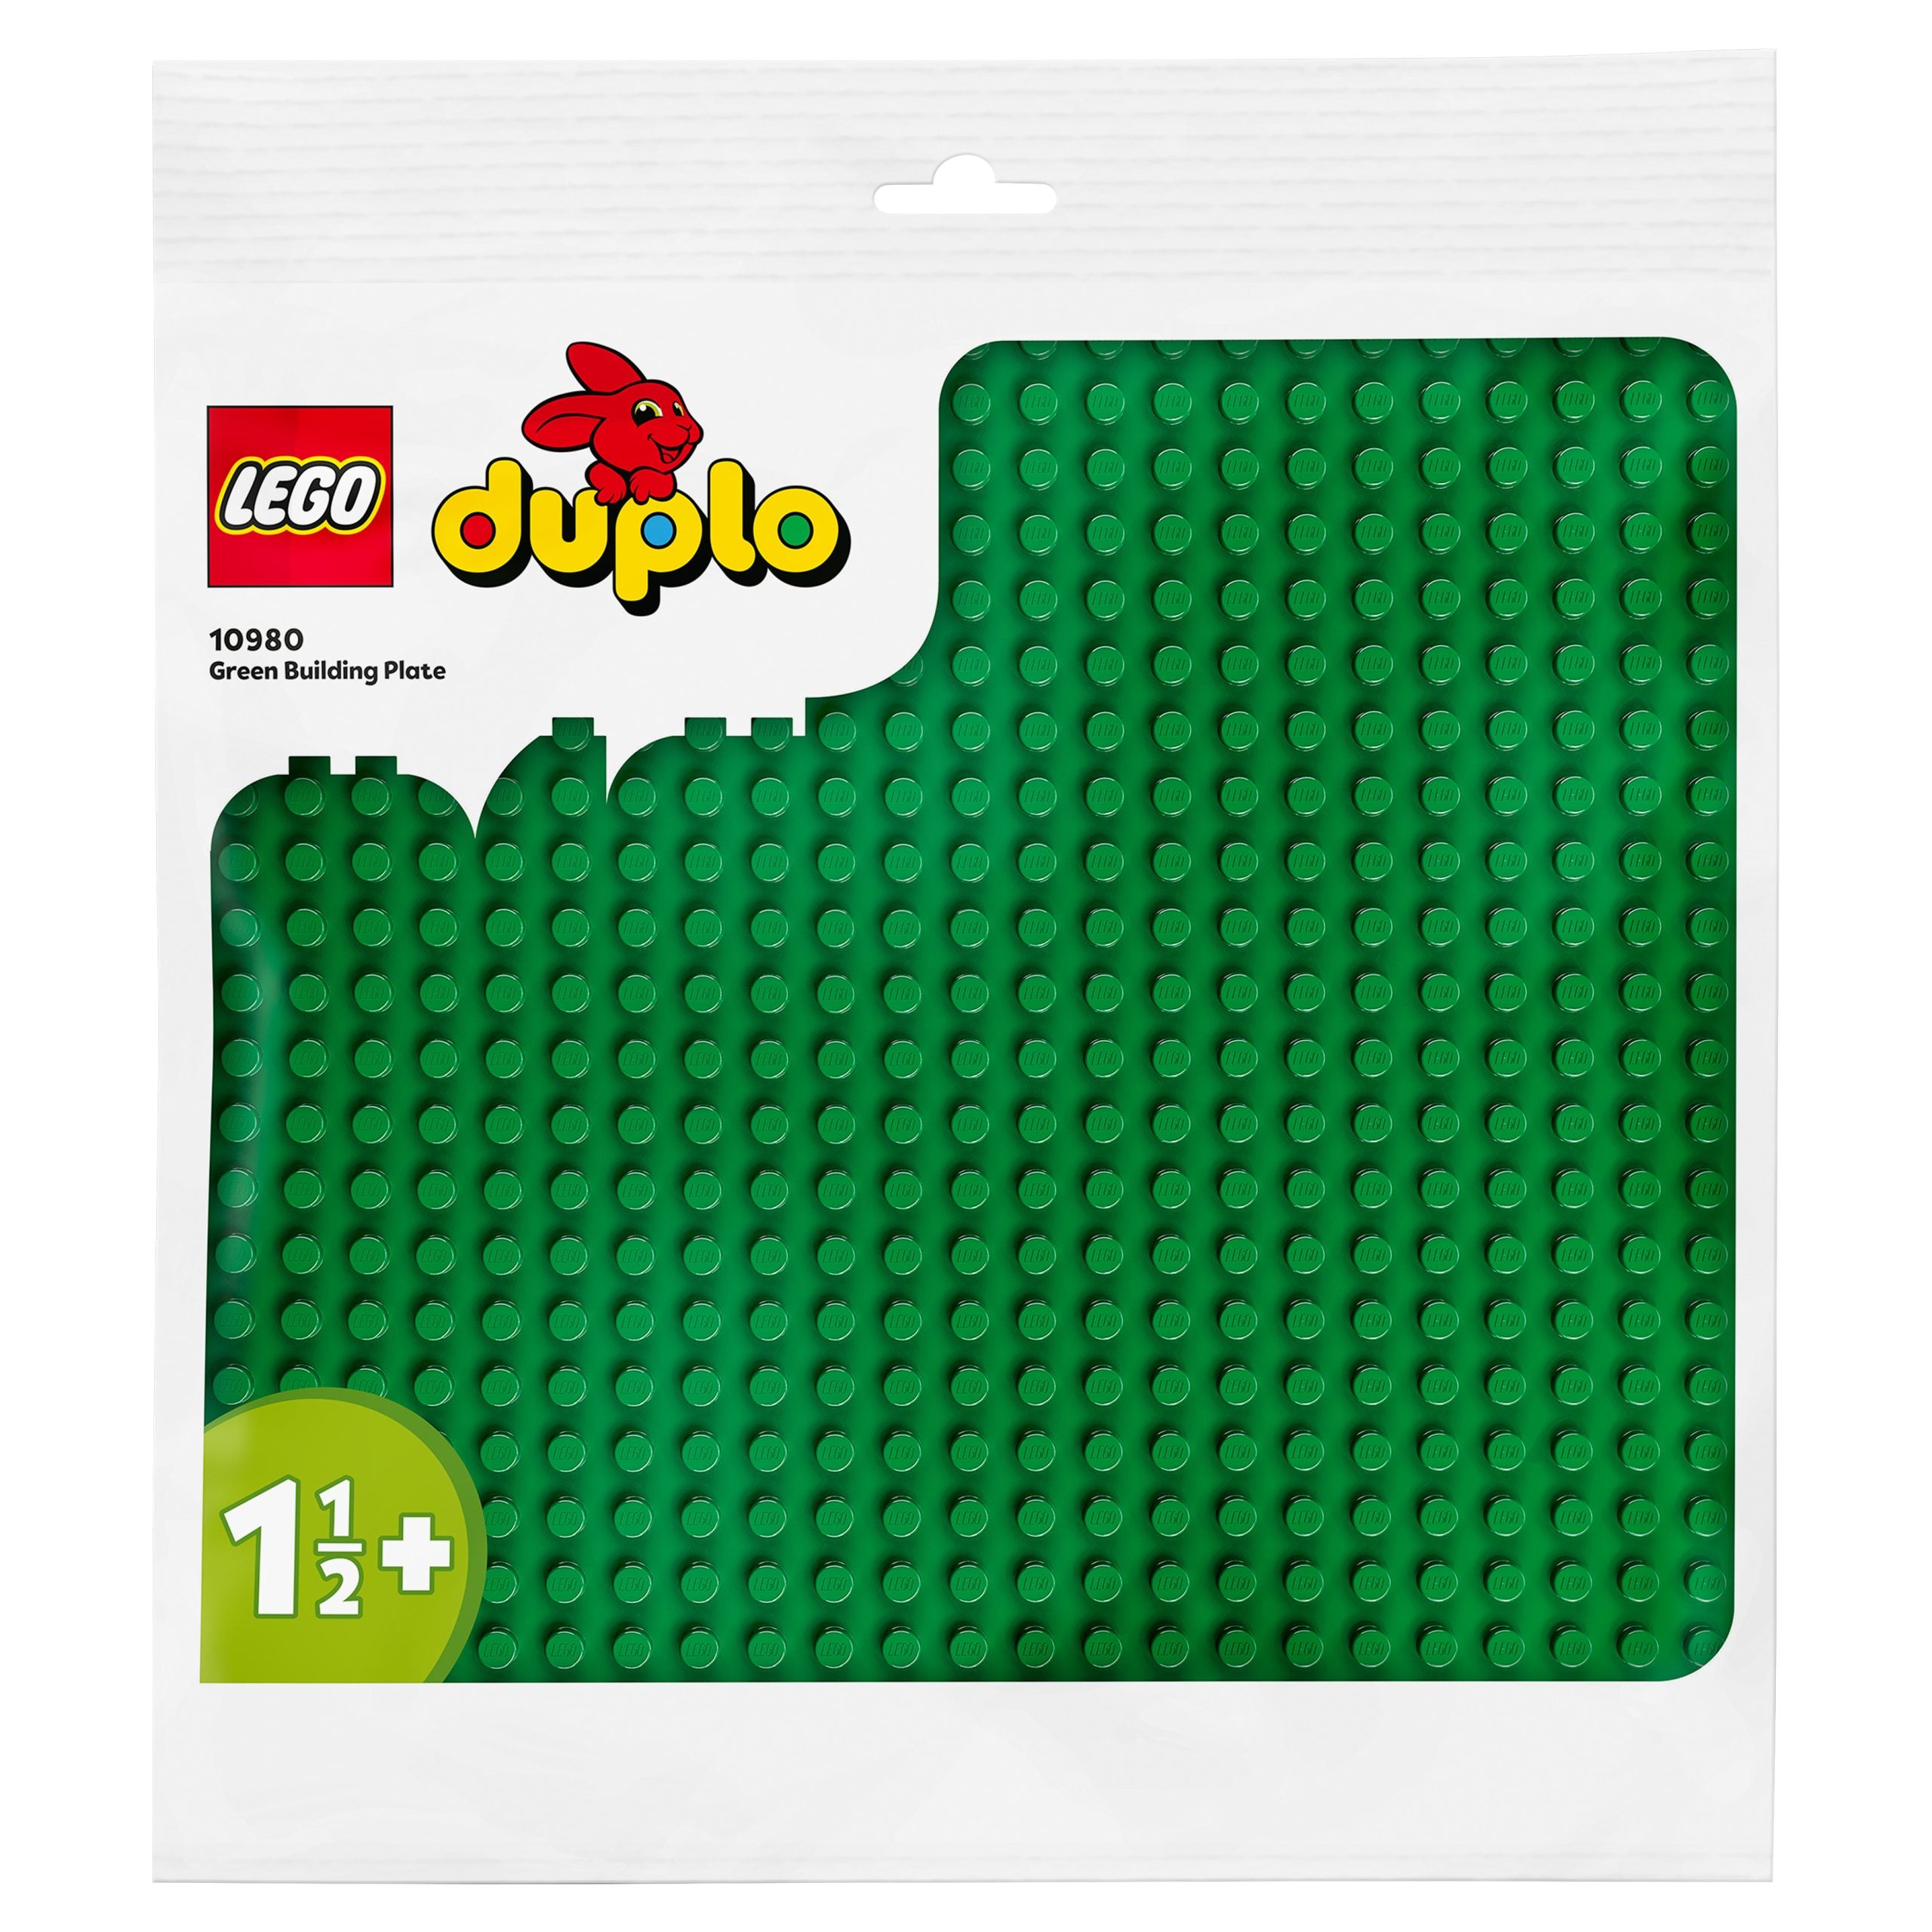 Lego 10909 Scatola Del Cuore 